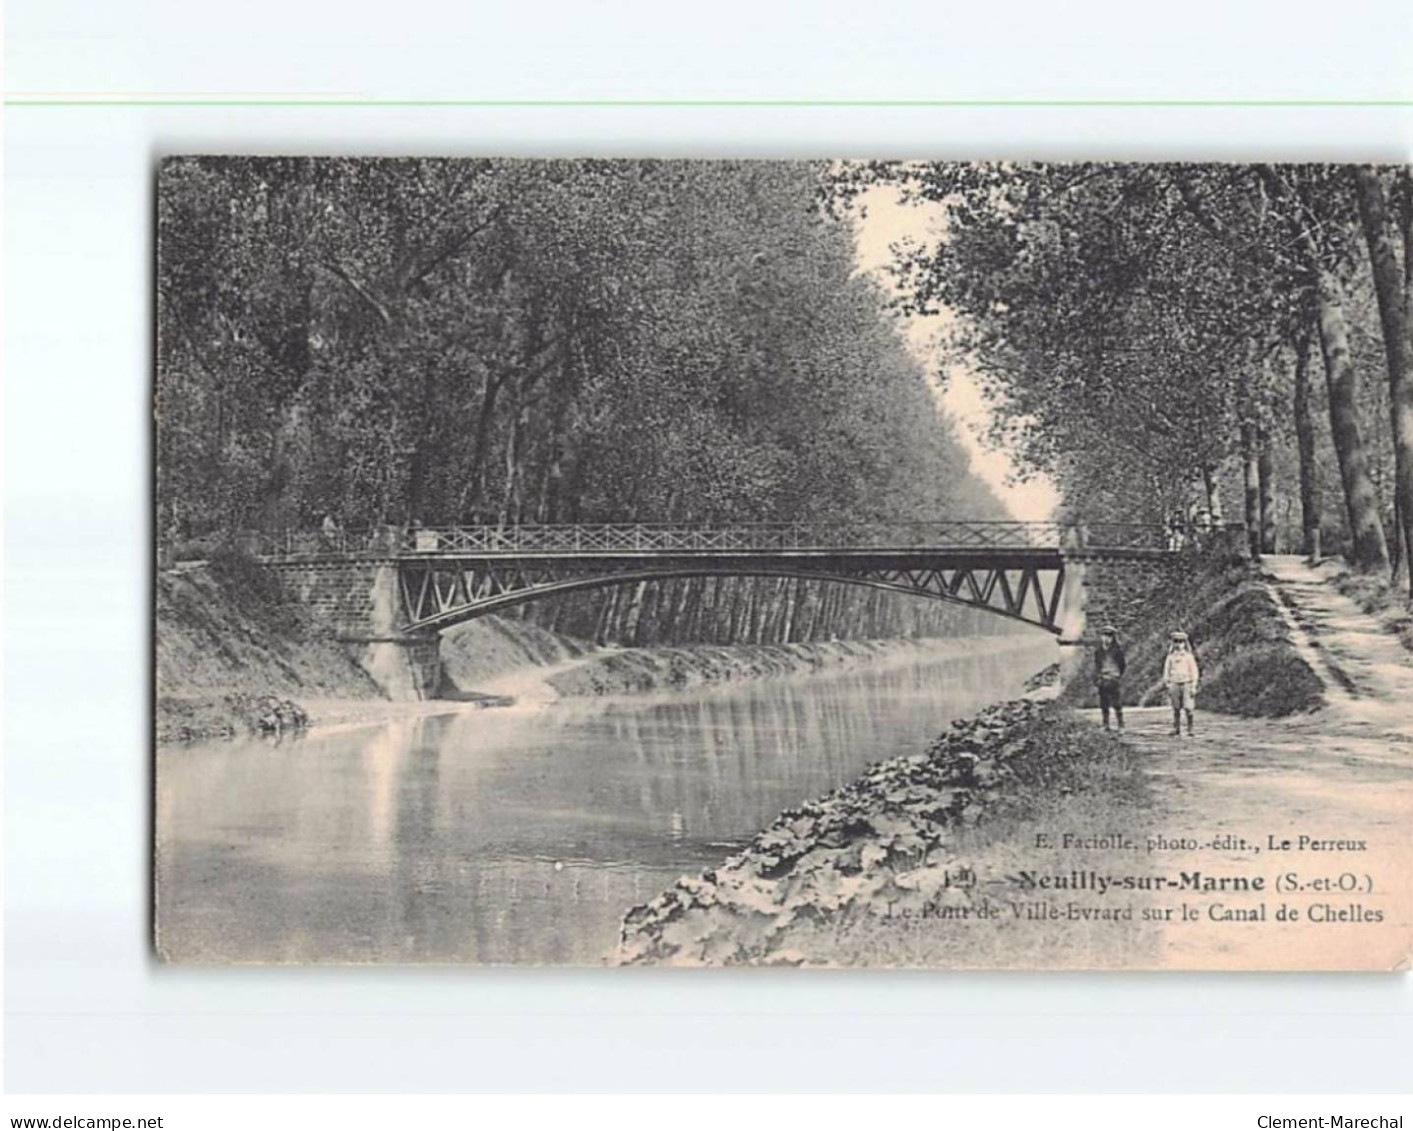 NEUILLY SUR MARNE : Le Pont De Ville Evrard Sur Le Canal De Chelles - état - Neuilly Sur Marne